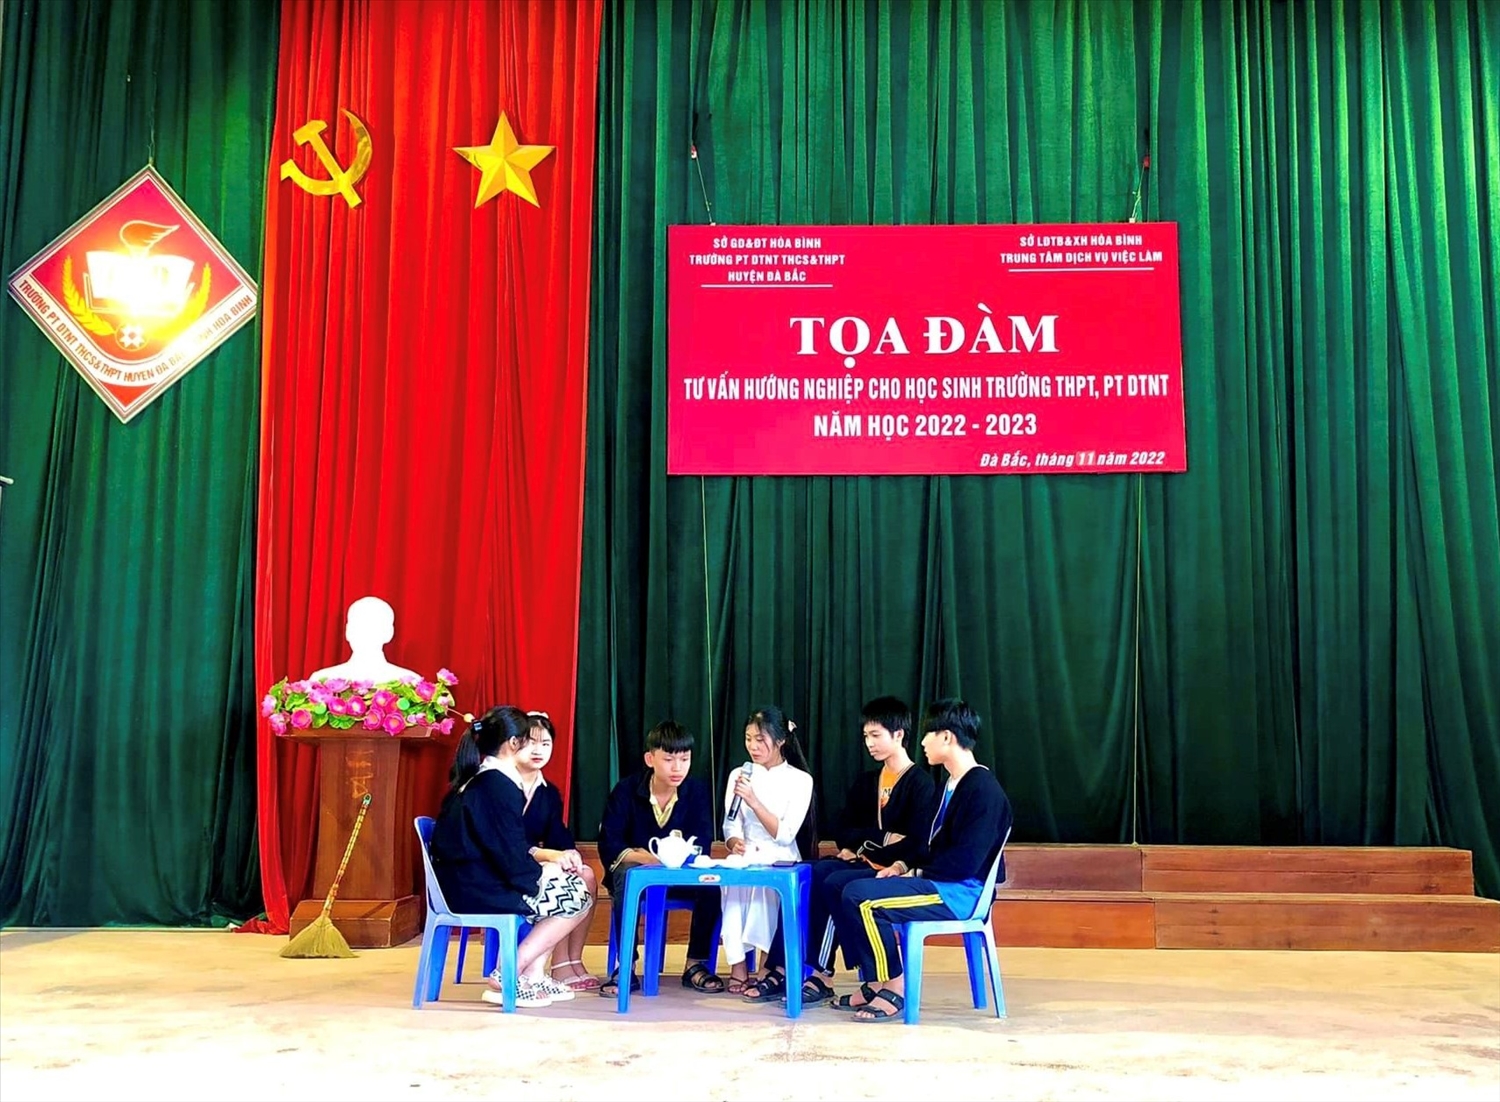 Học sinh Trường PTDTNT THCS &THPT huyện Đà Bắc (Hòa Bình) tham gia chương trình Tọa đàm tư vấn, hướng nghiệp